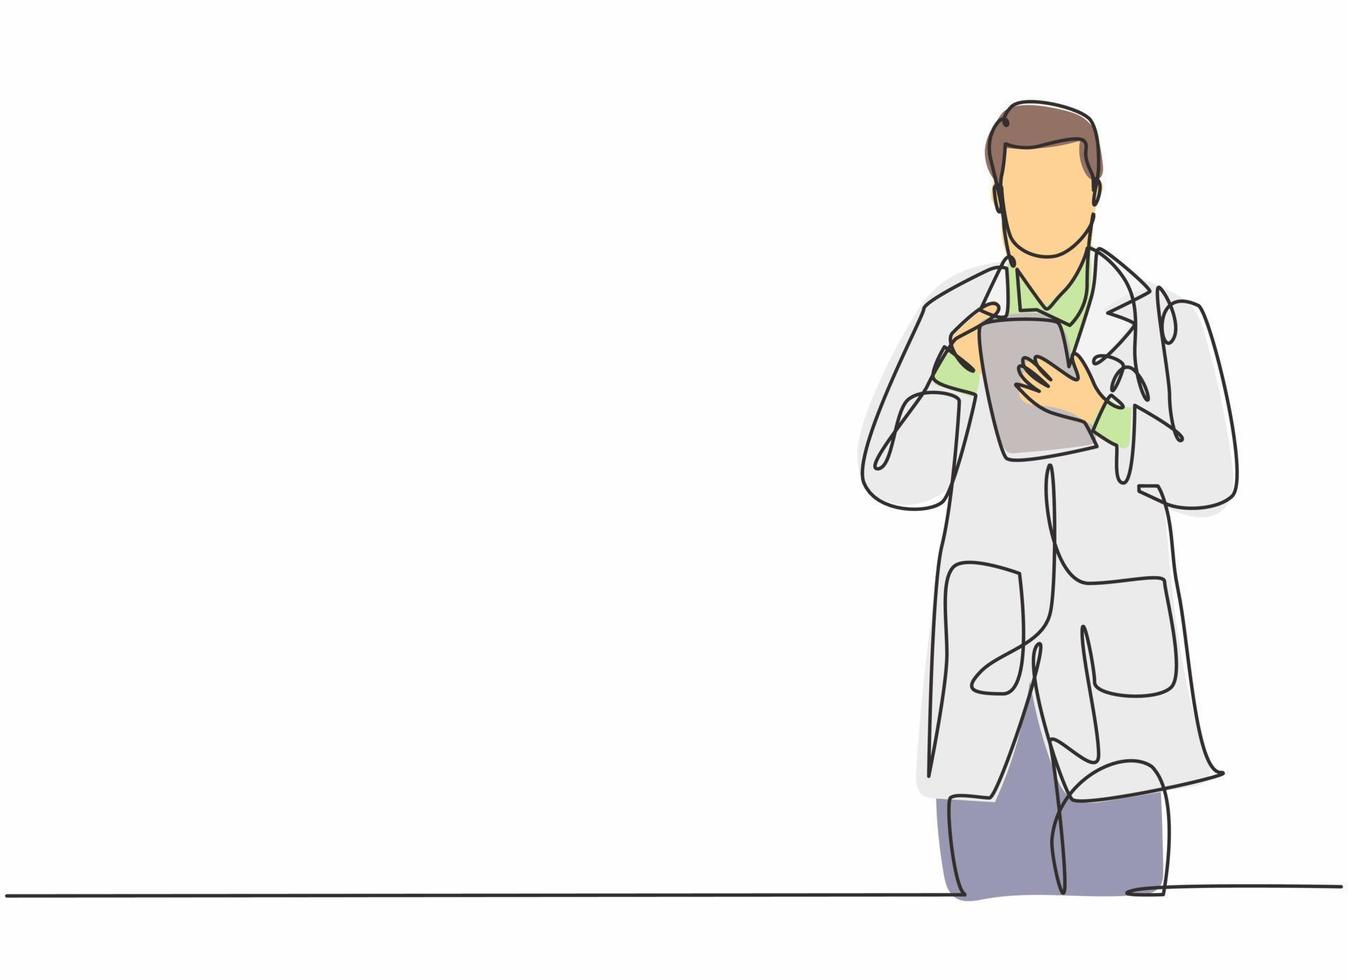 enda kontinuerlig linjeteckning av ung manlig läkare som tänker rätt medicin till patienten medan han håller tabletten. medicinsk hälso- och sjukvård arbetare koncept en linje rita design vektor illustration